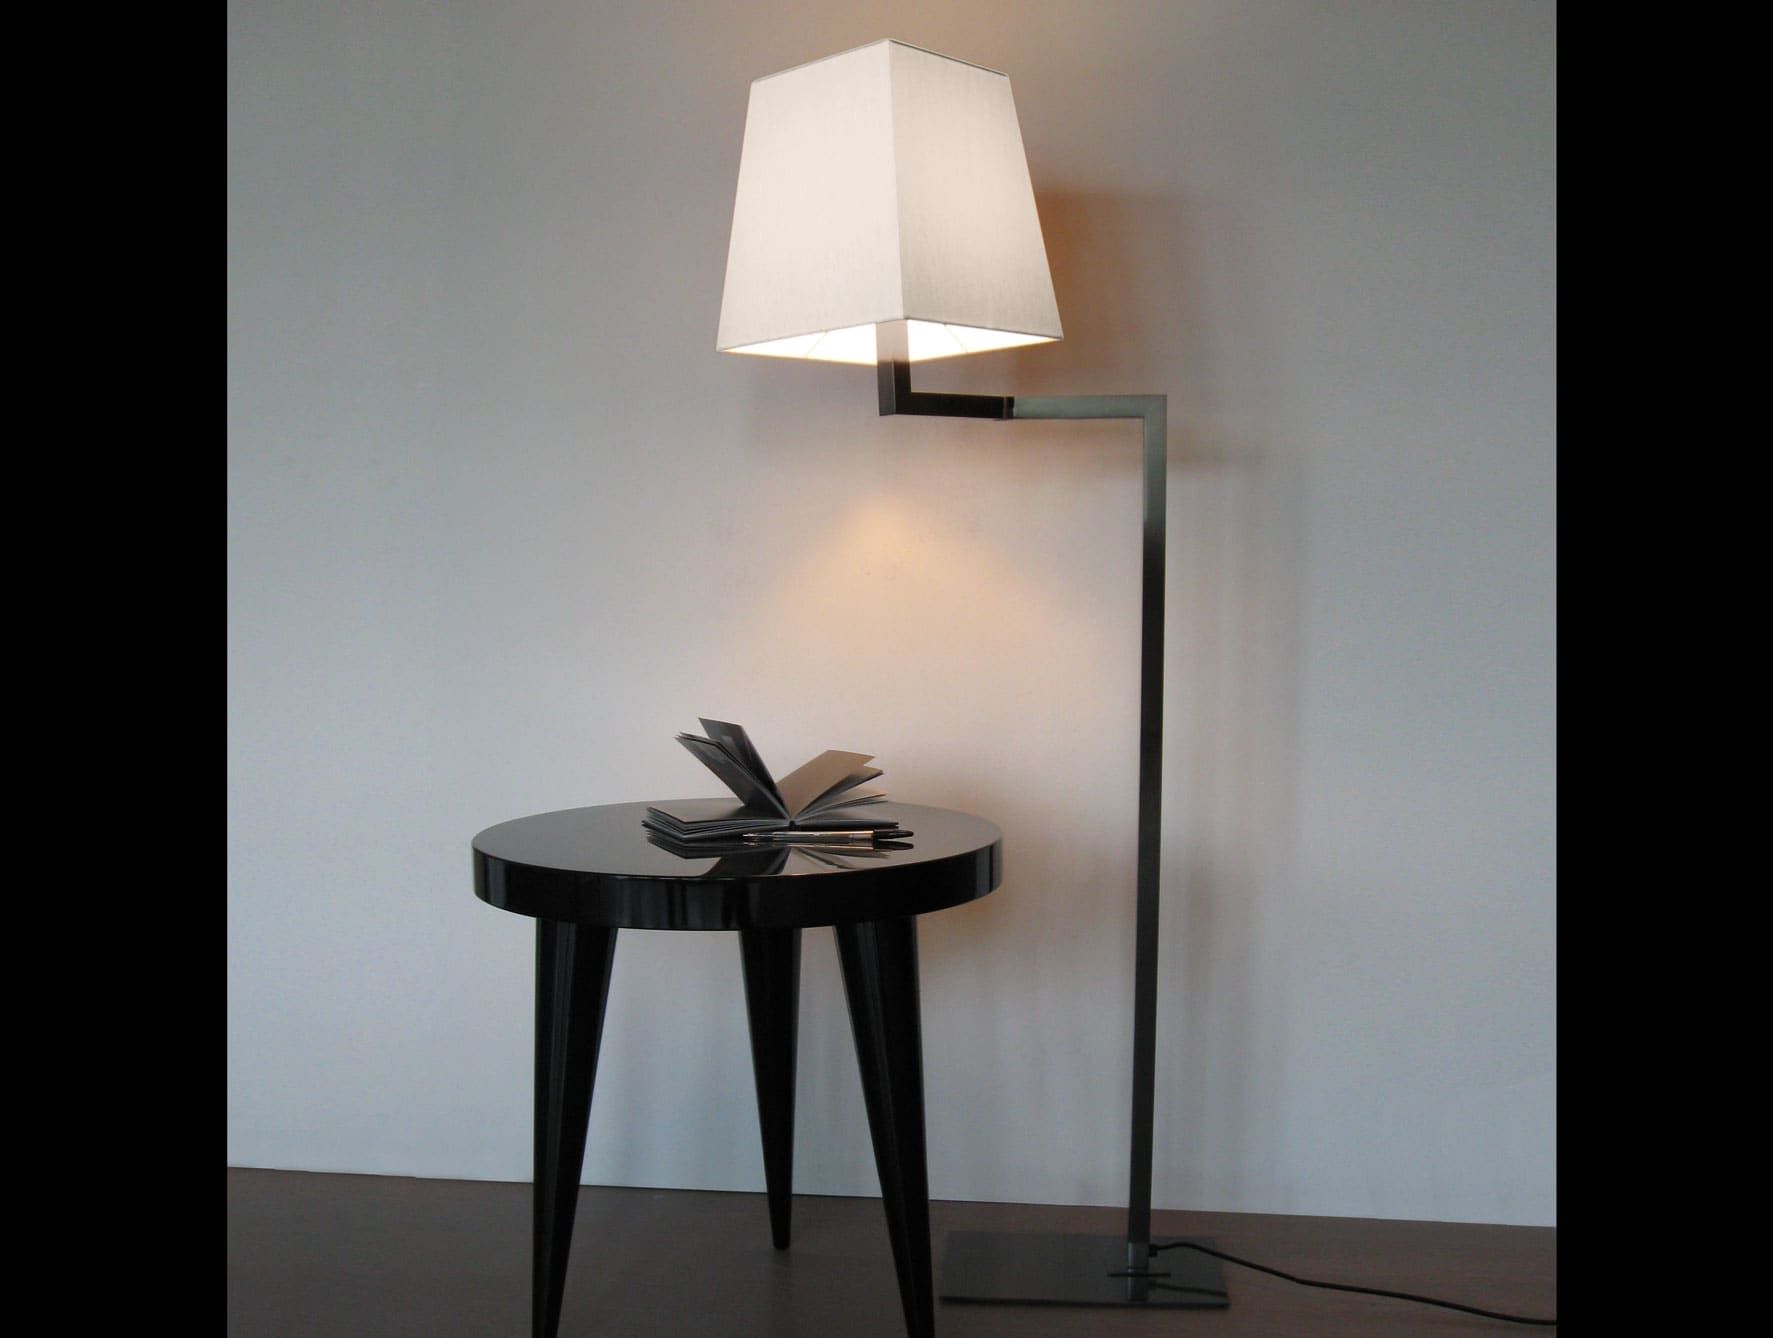 Quadra contemporary Italian floor lamp with black metal